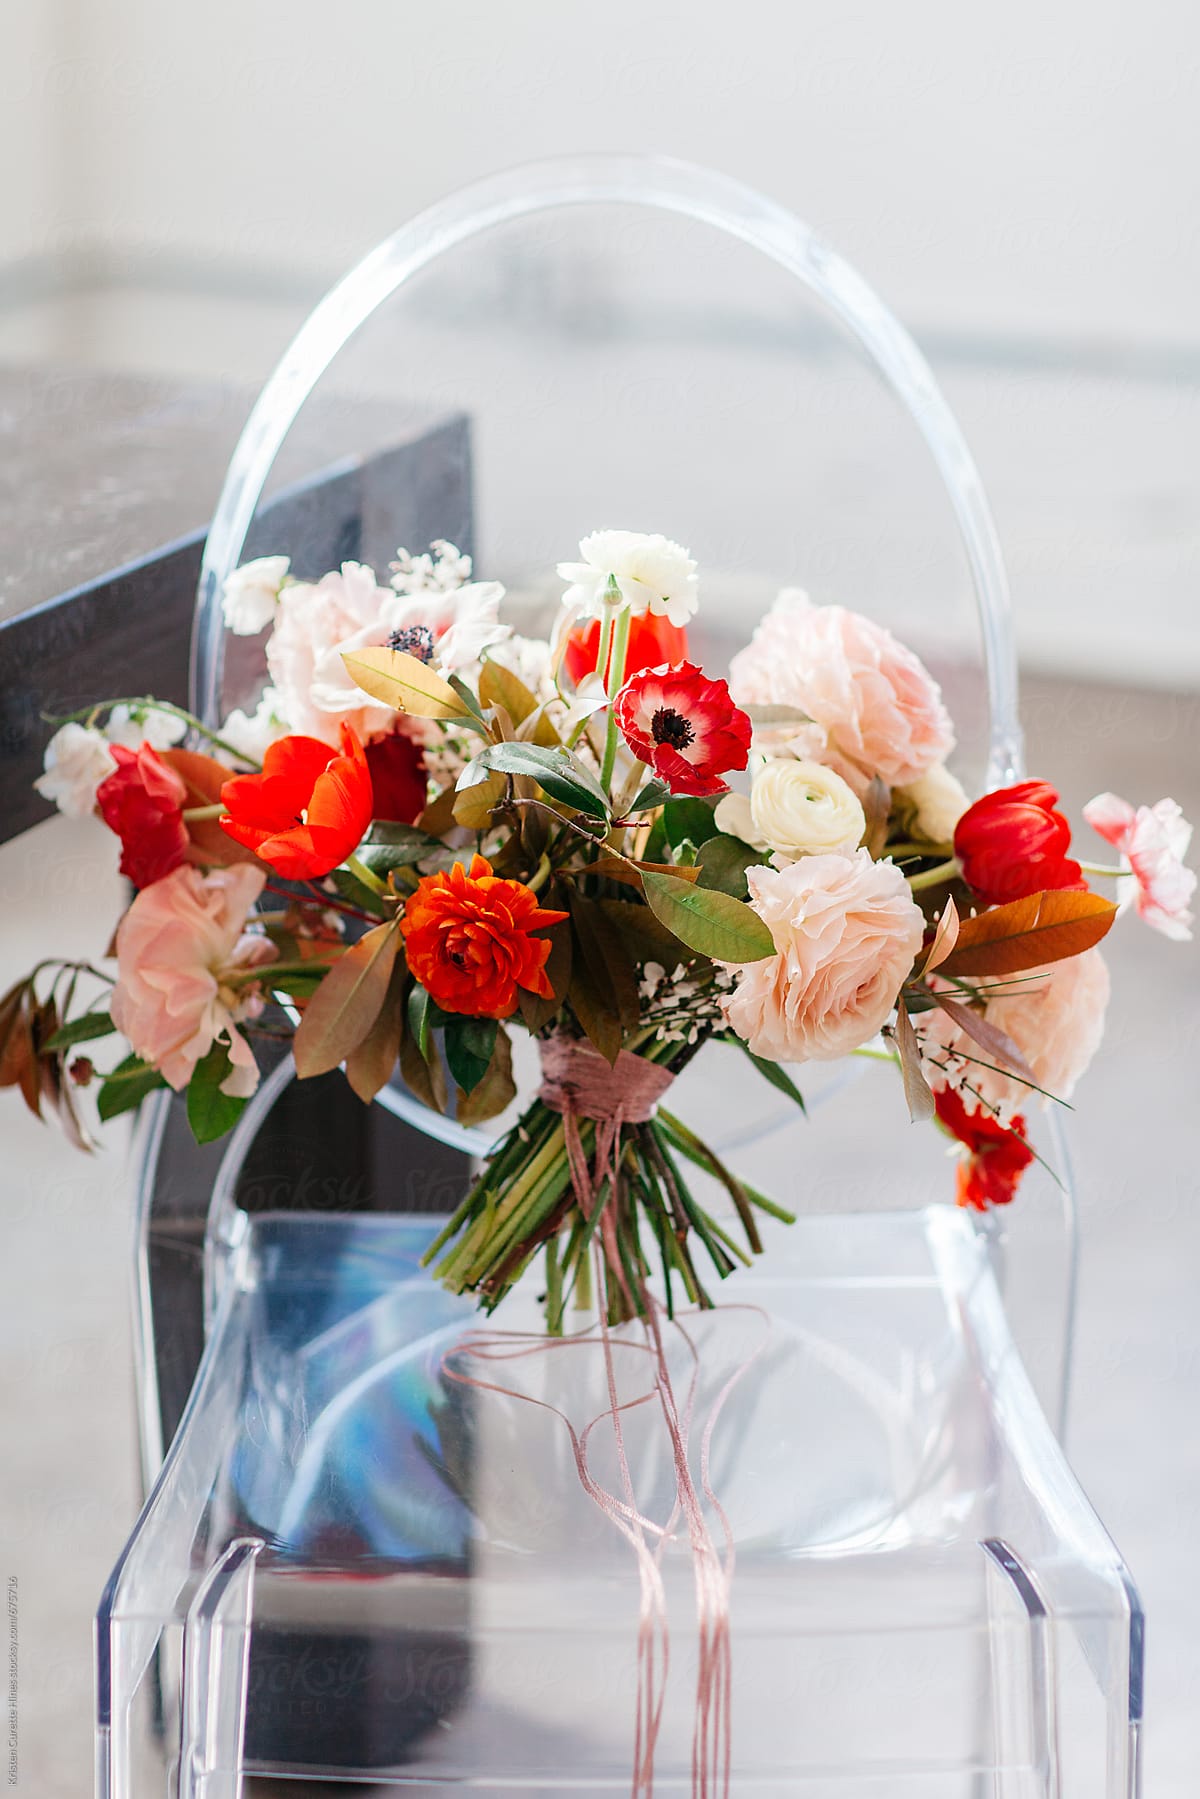 A wedding bouquet / flowers